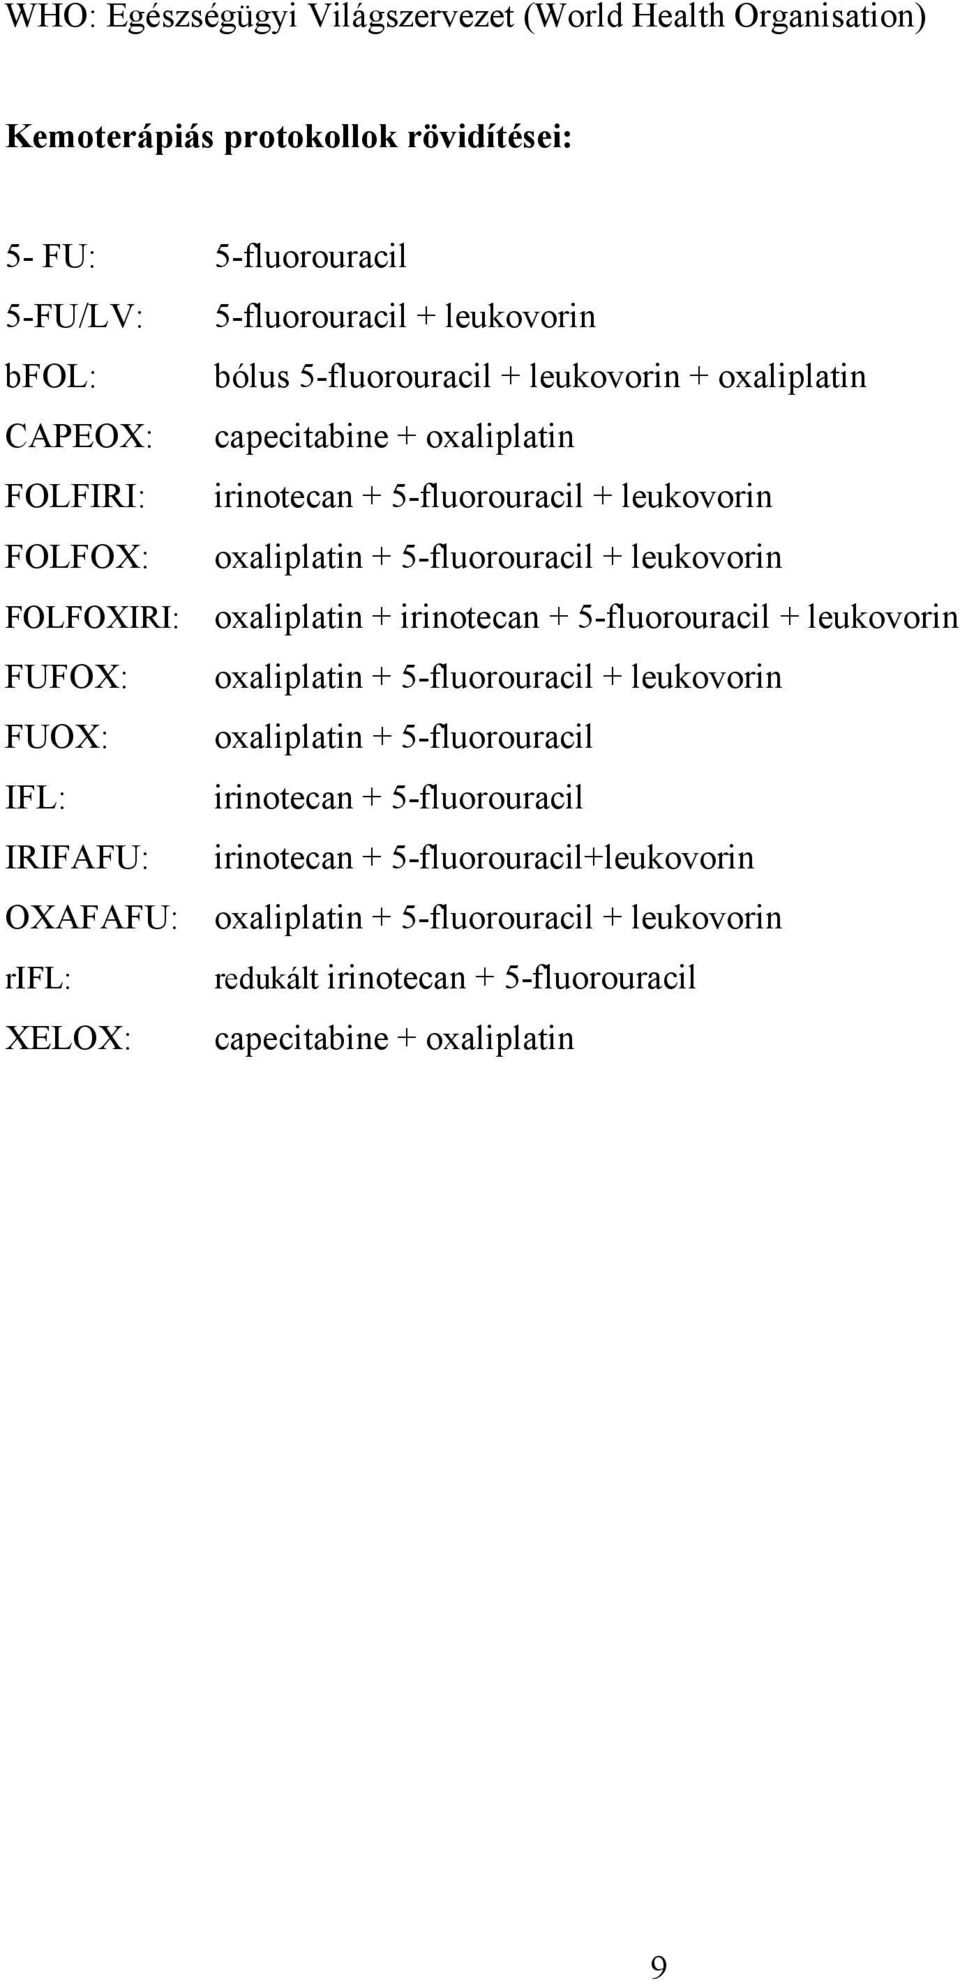 FOLFOXIRI: oxaliplatin + irinotecan + 5-fluorouracil + leukovorin FUFOX: oxaliplatin + 5-fluorouracil + leukovorin FUOX: oxaliplatin + 5-fluorouracil IFL: irinotecan +